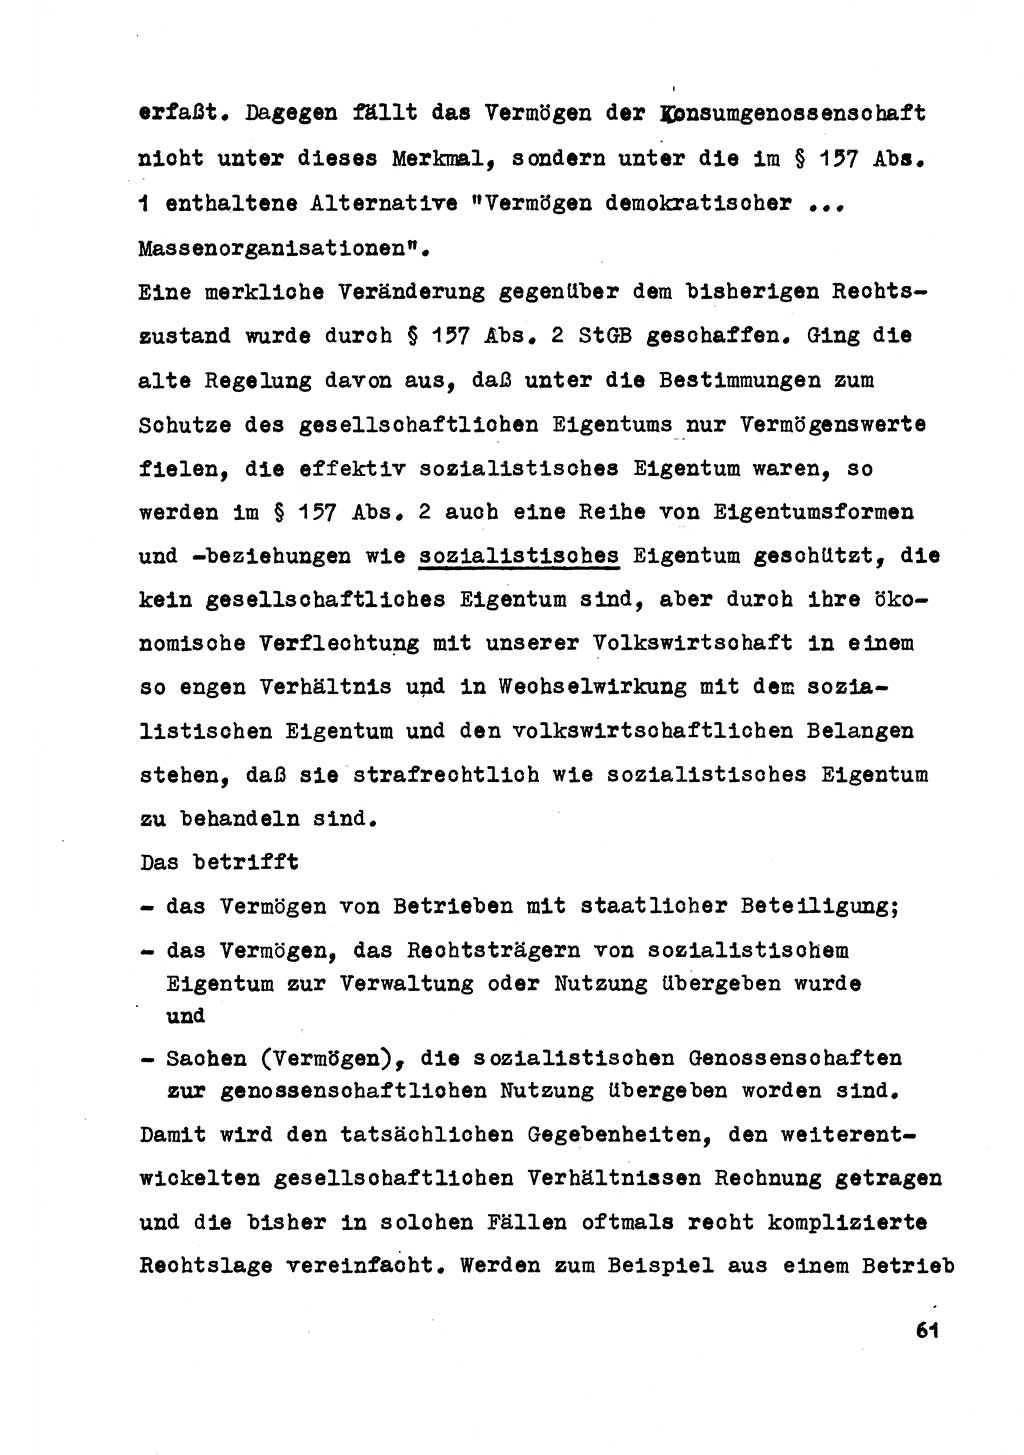 Strafrecht der DDR (Deutsche Demokratische Republik), Besonderer Teil, Lehrmaterial, Heft 5 1970, Seite 61 (Strafr. DDR BT Lehrmat. H. 5 1970, S. 61)